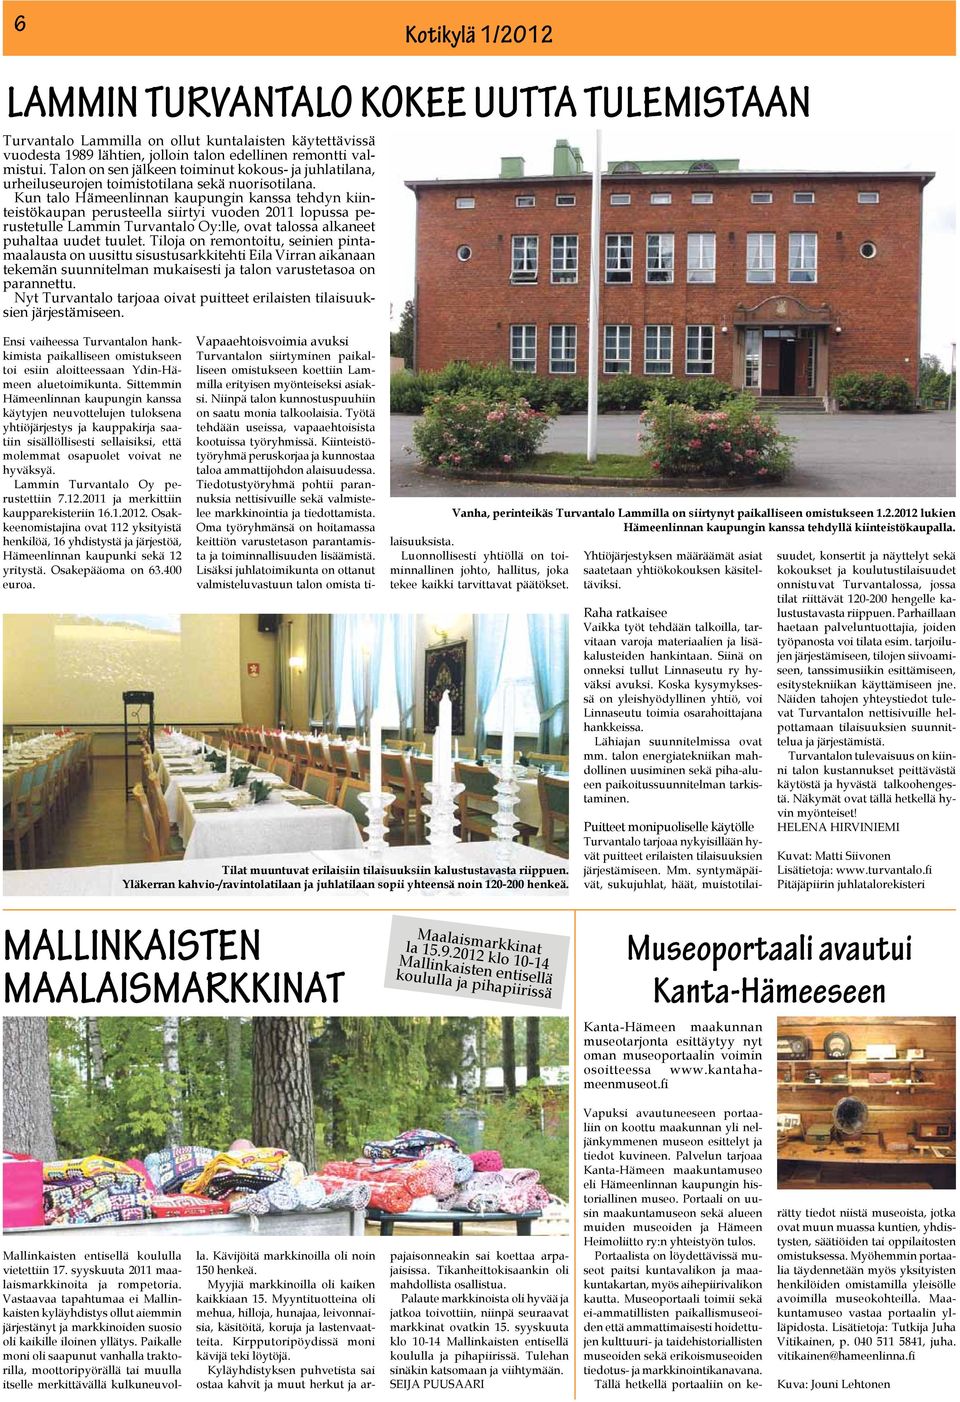 Kun talo Hämeenlinnan kaupungin kanssa tehdyn kiinteistökaupan perusteella siirtyi vuoden 2011 lopussa perustetulle Lammin Turvantalo Oy:lle, ovat talossa alkaneet puhaltaa uudet tuulet.